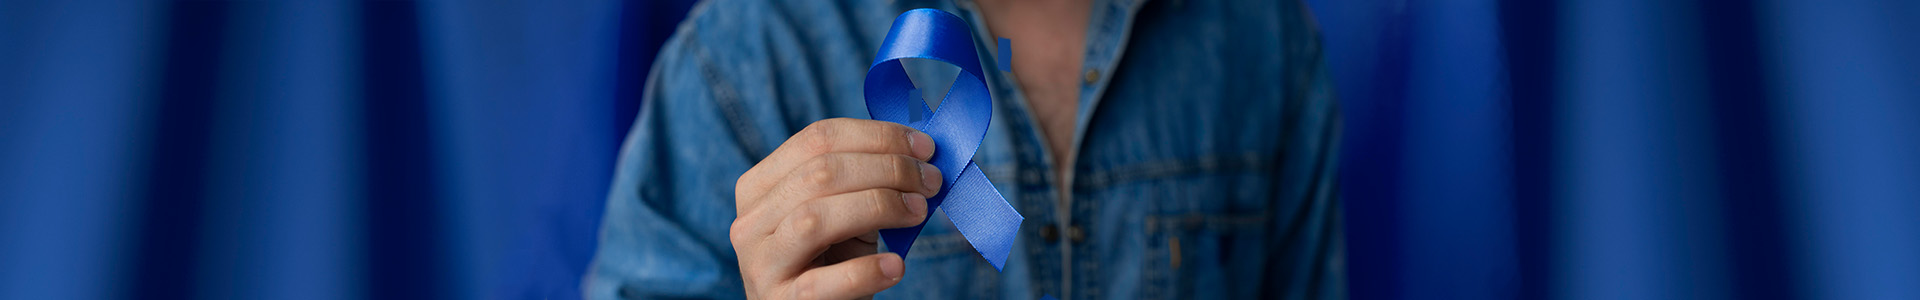 Bandeau Mars bleu dépistage et prevention cancer colorectal